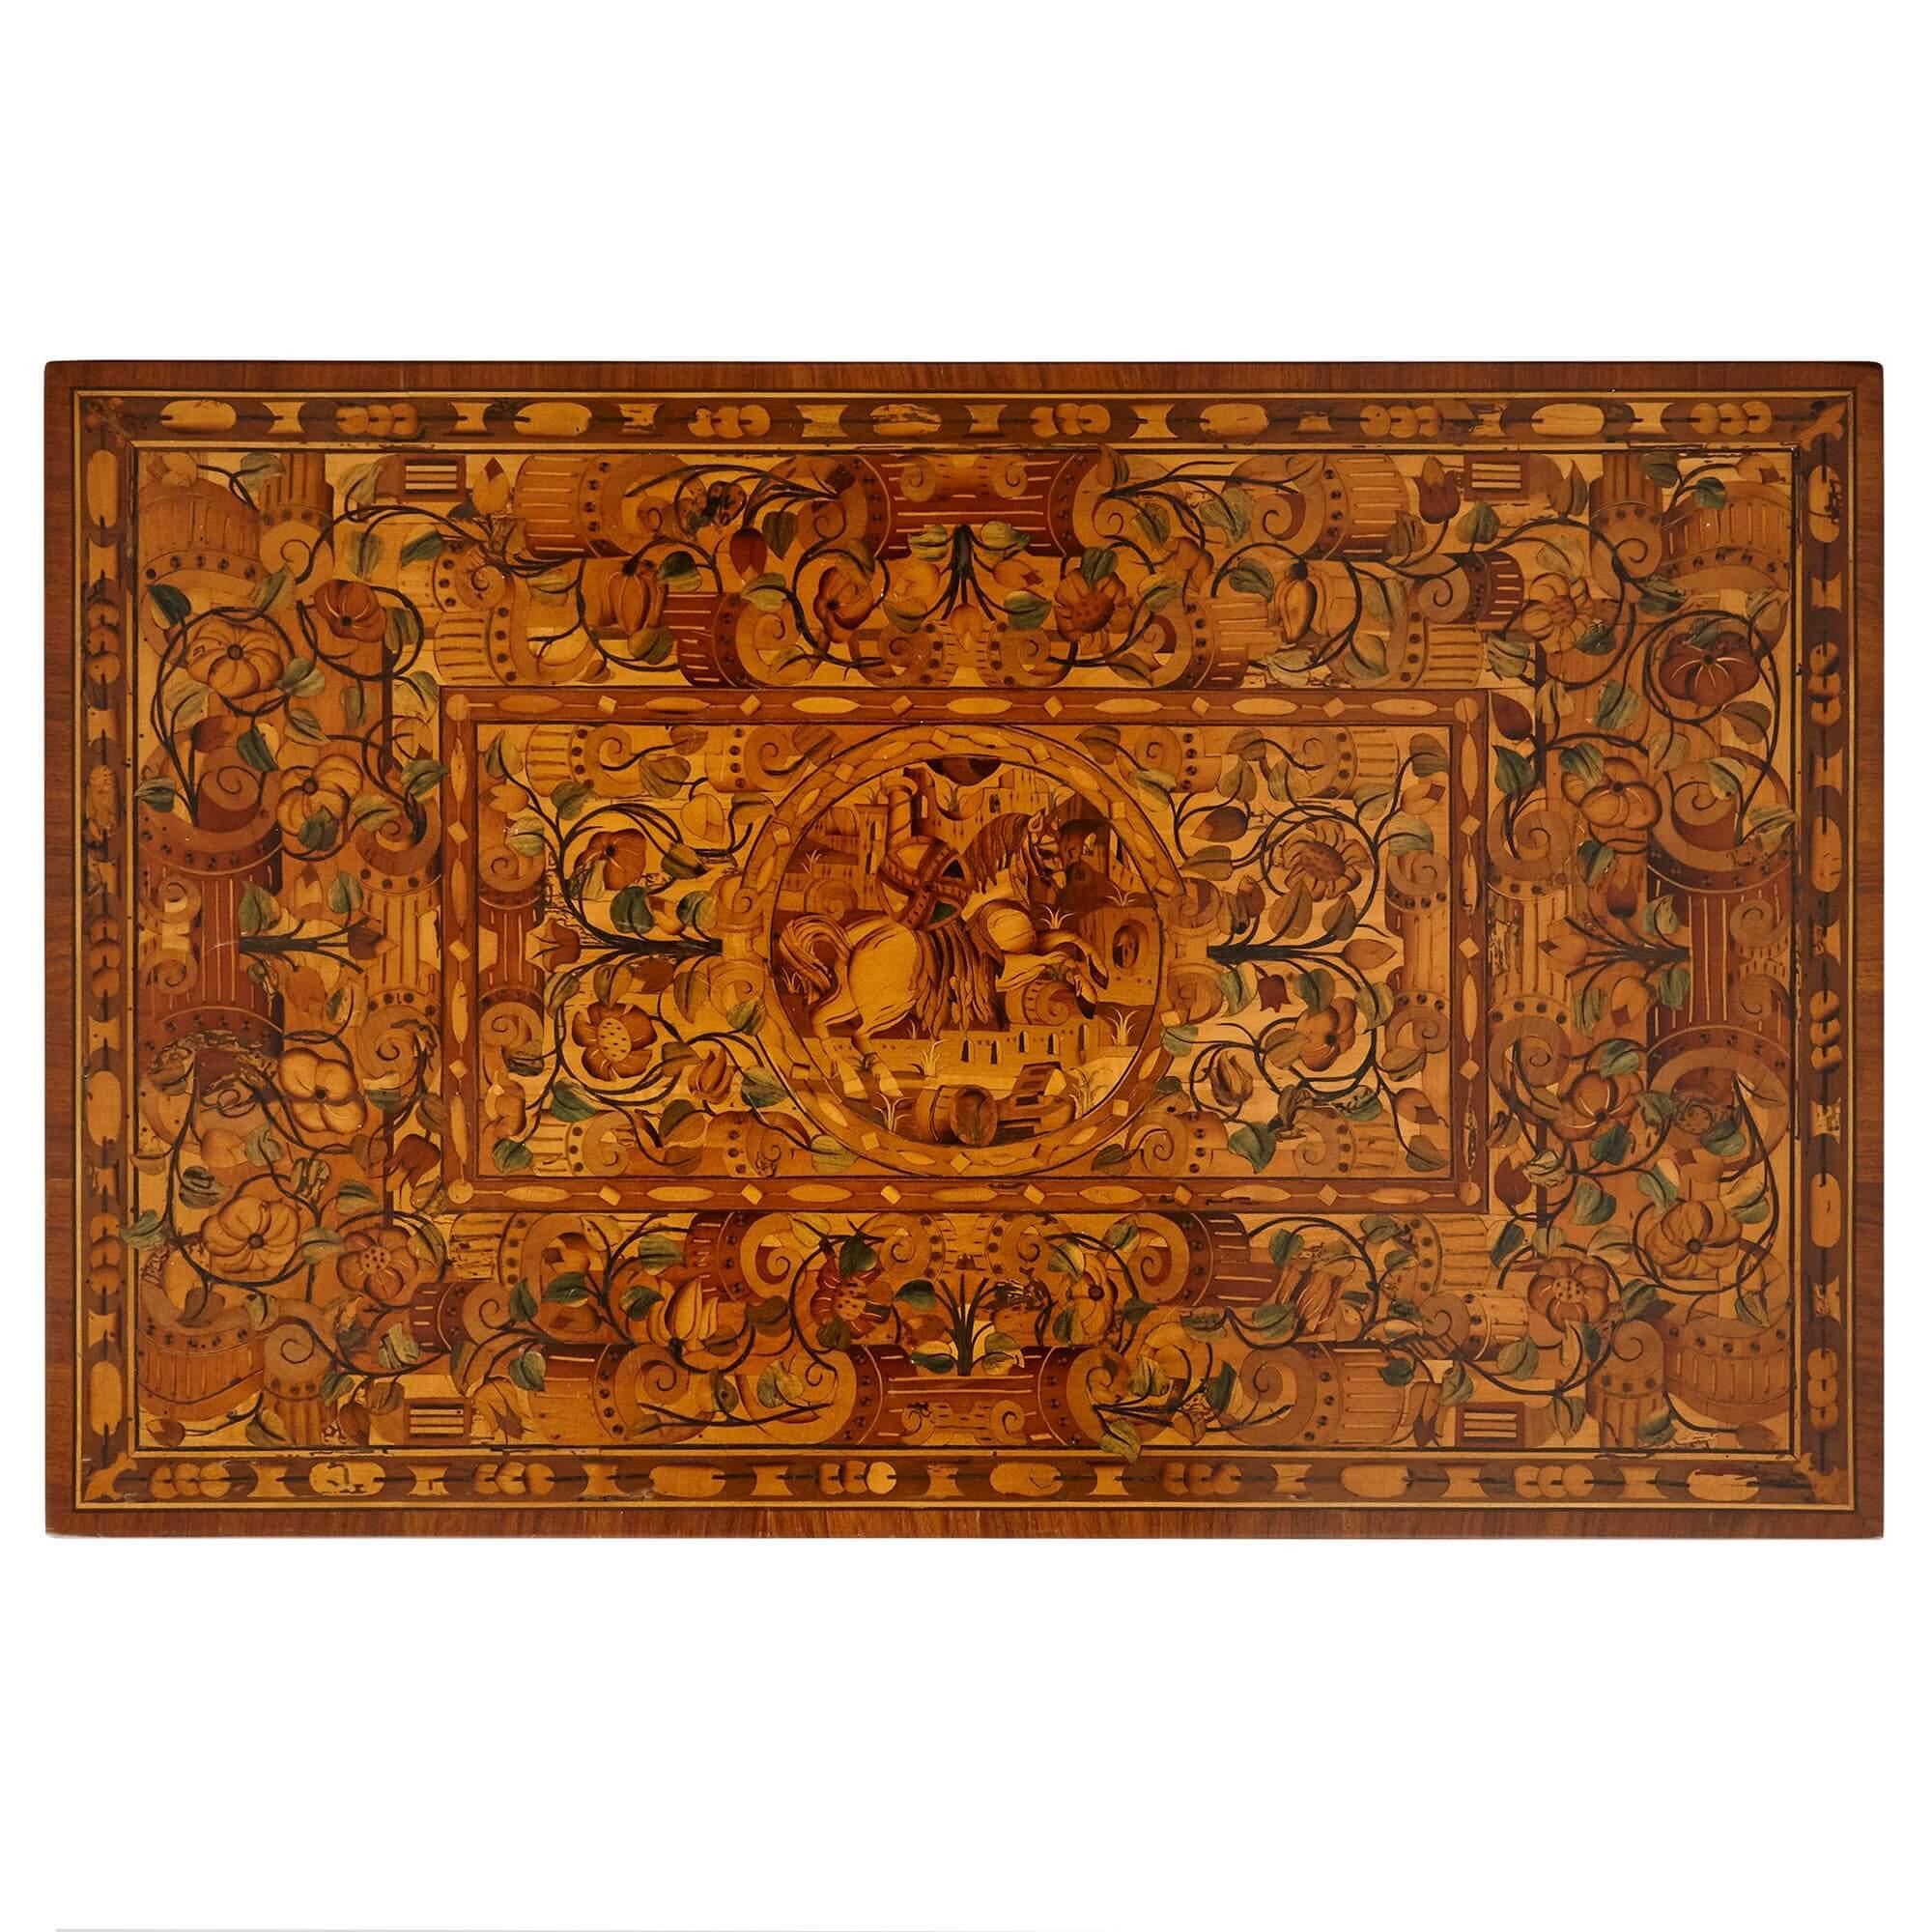 Produite en Allemagne au début du XVIIe siècle, cette table est de style et d'époque baroque. La table repose sur quatre pieds rectilignes, dont les profils carrés s'effilent de haut en bas. Les pieds sont reliés par un gradin inférieur et